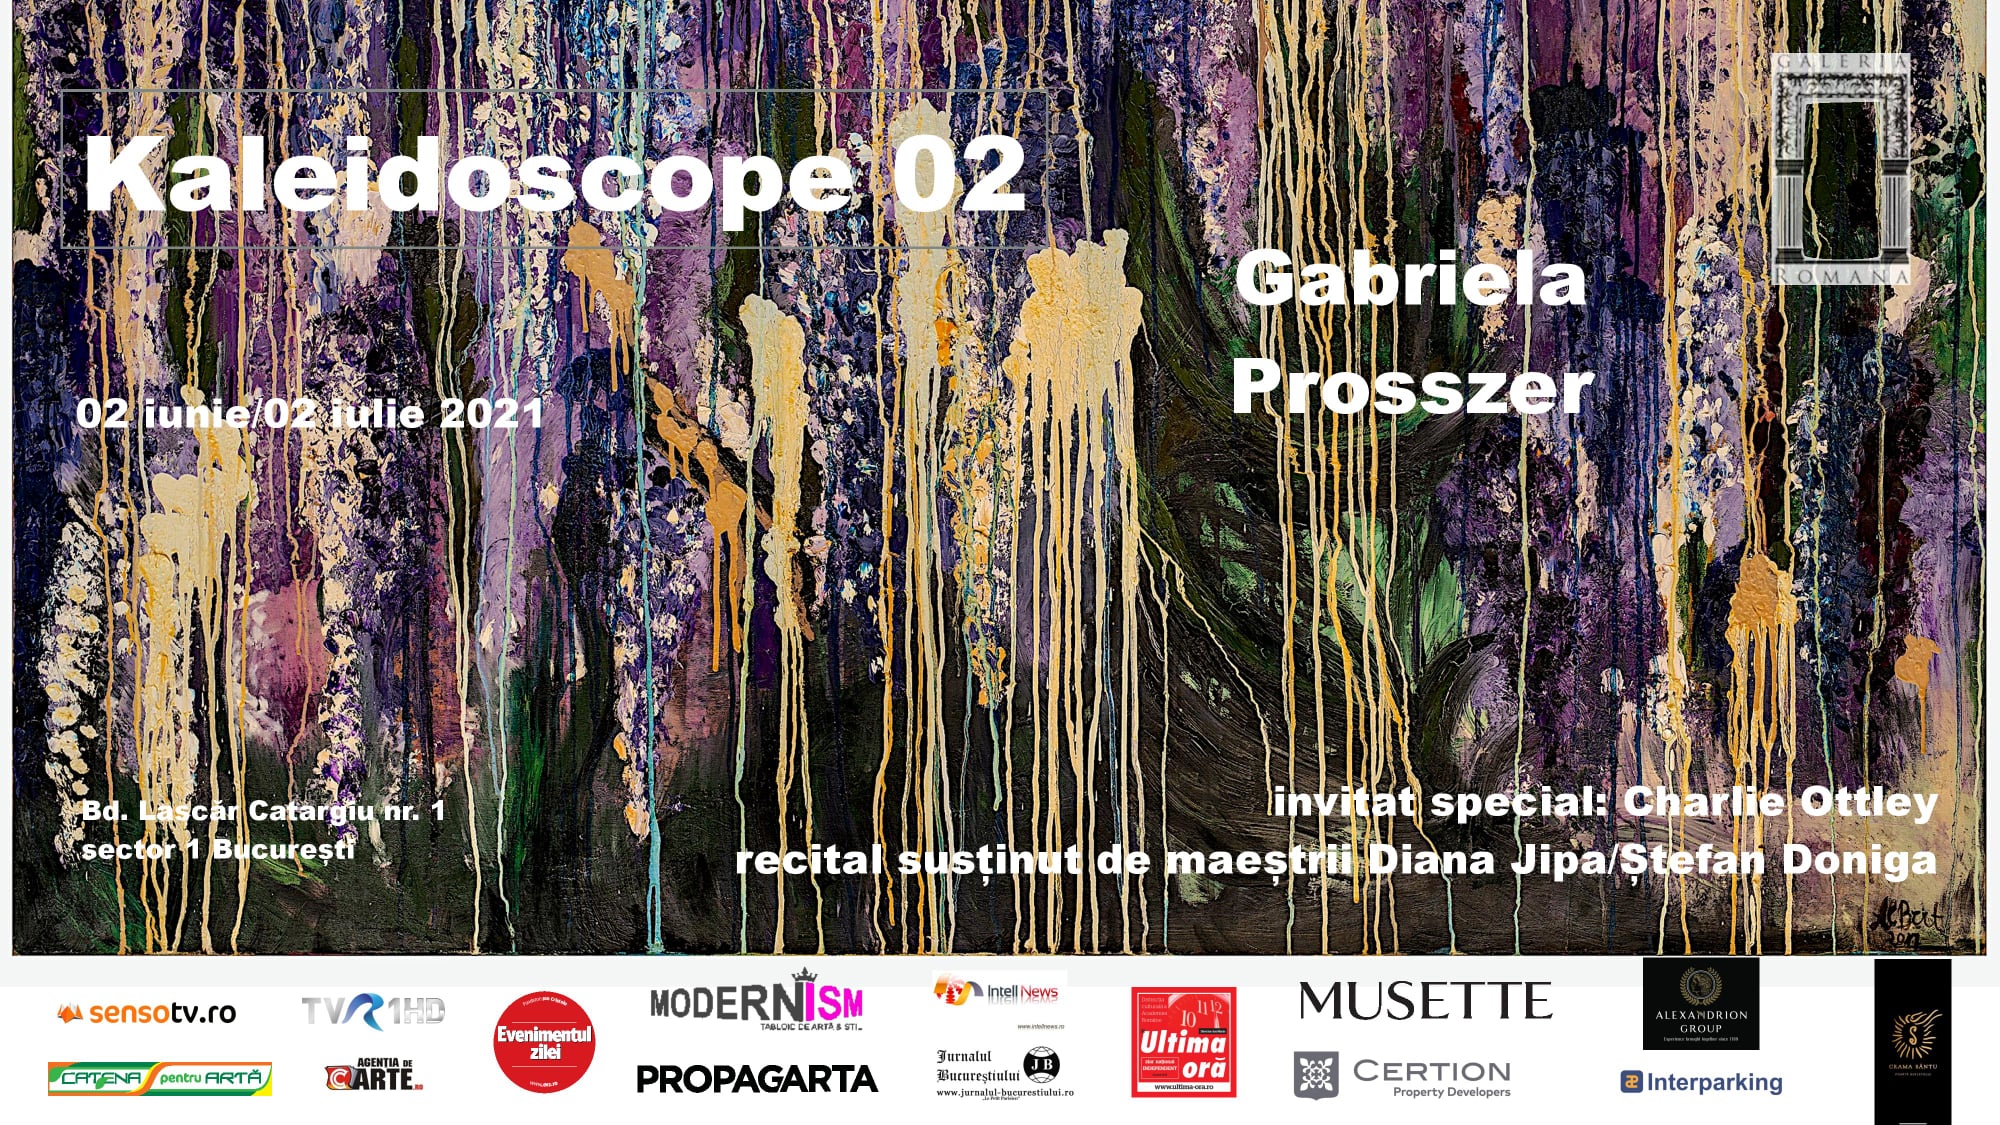 Invitație la Galeria Romană. Se deschide expoziția de pictură Kaleidoscope – Gabriela Prosszer